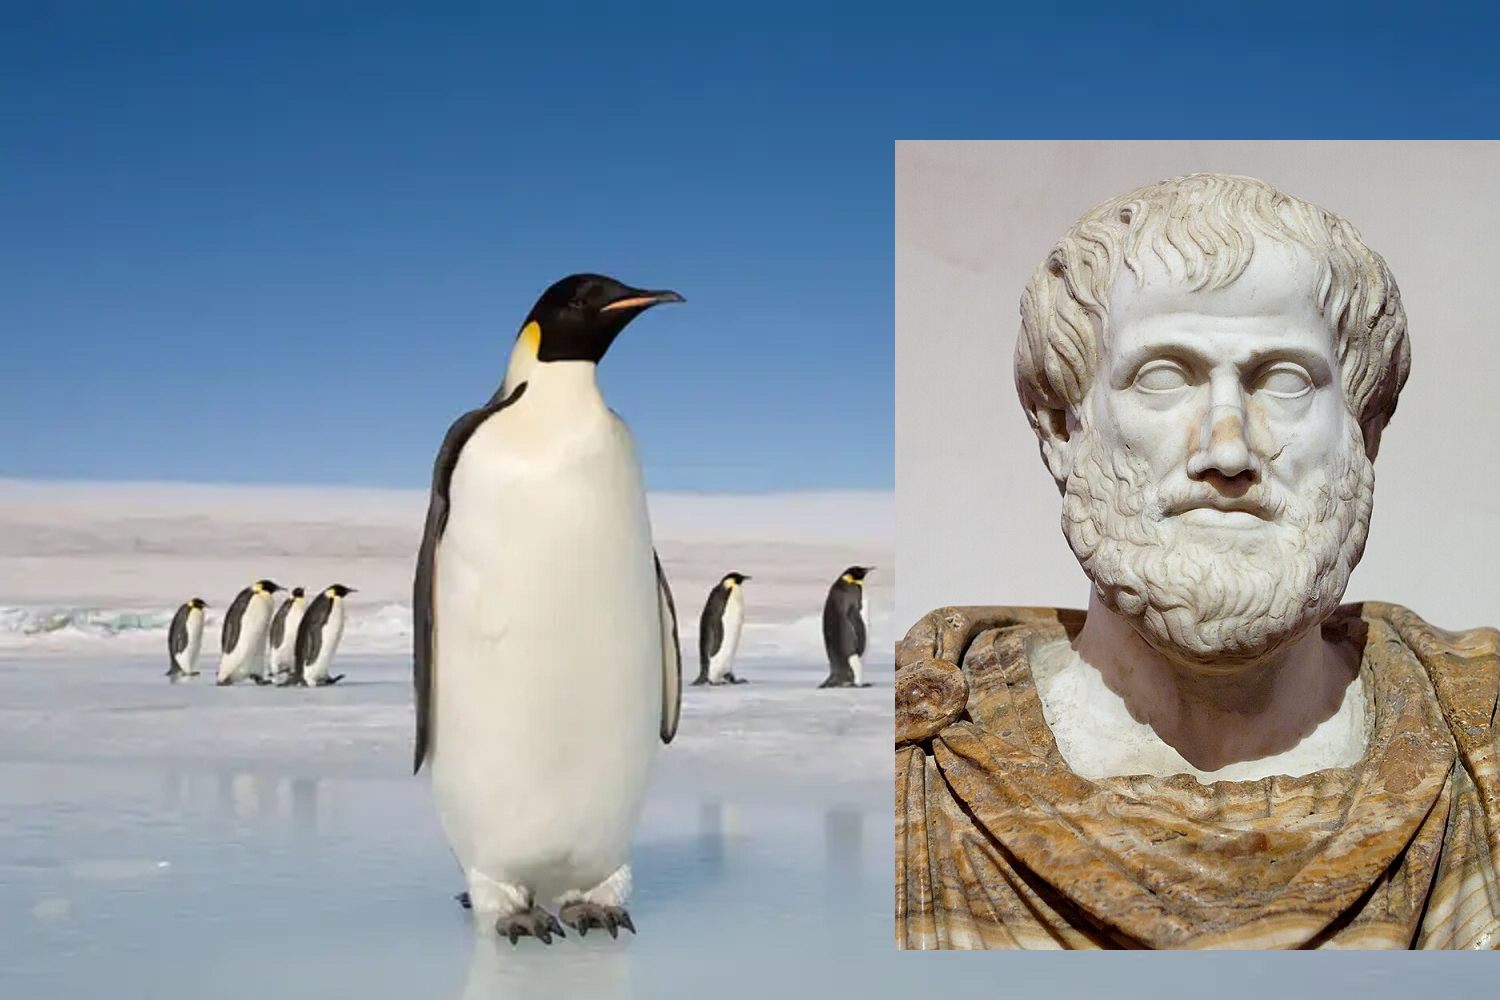 Ανταρκτική. Η Ήπειρος που πρώτος ανέφερε ο Αριστοτέλης, αν και ανακαλύφθηκε 2000 χρόνια αργότερα! Γιατί την ονόμασε έτσι